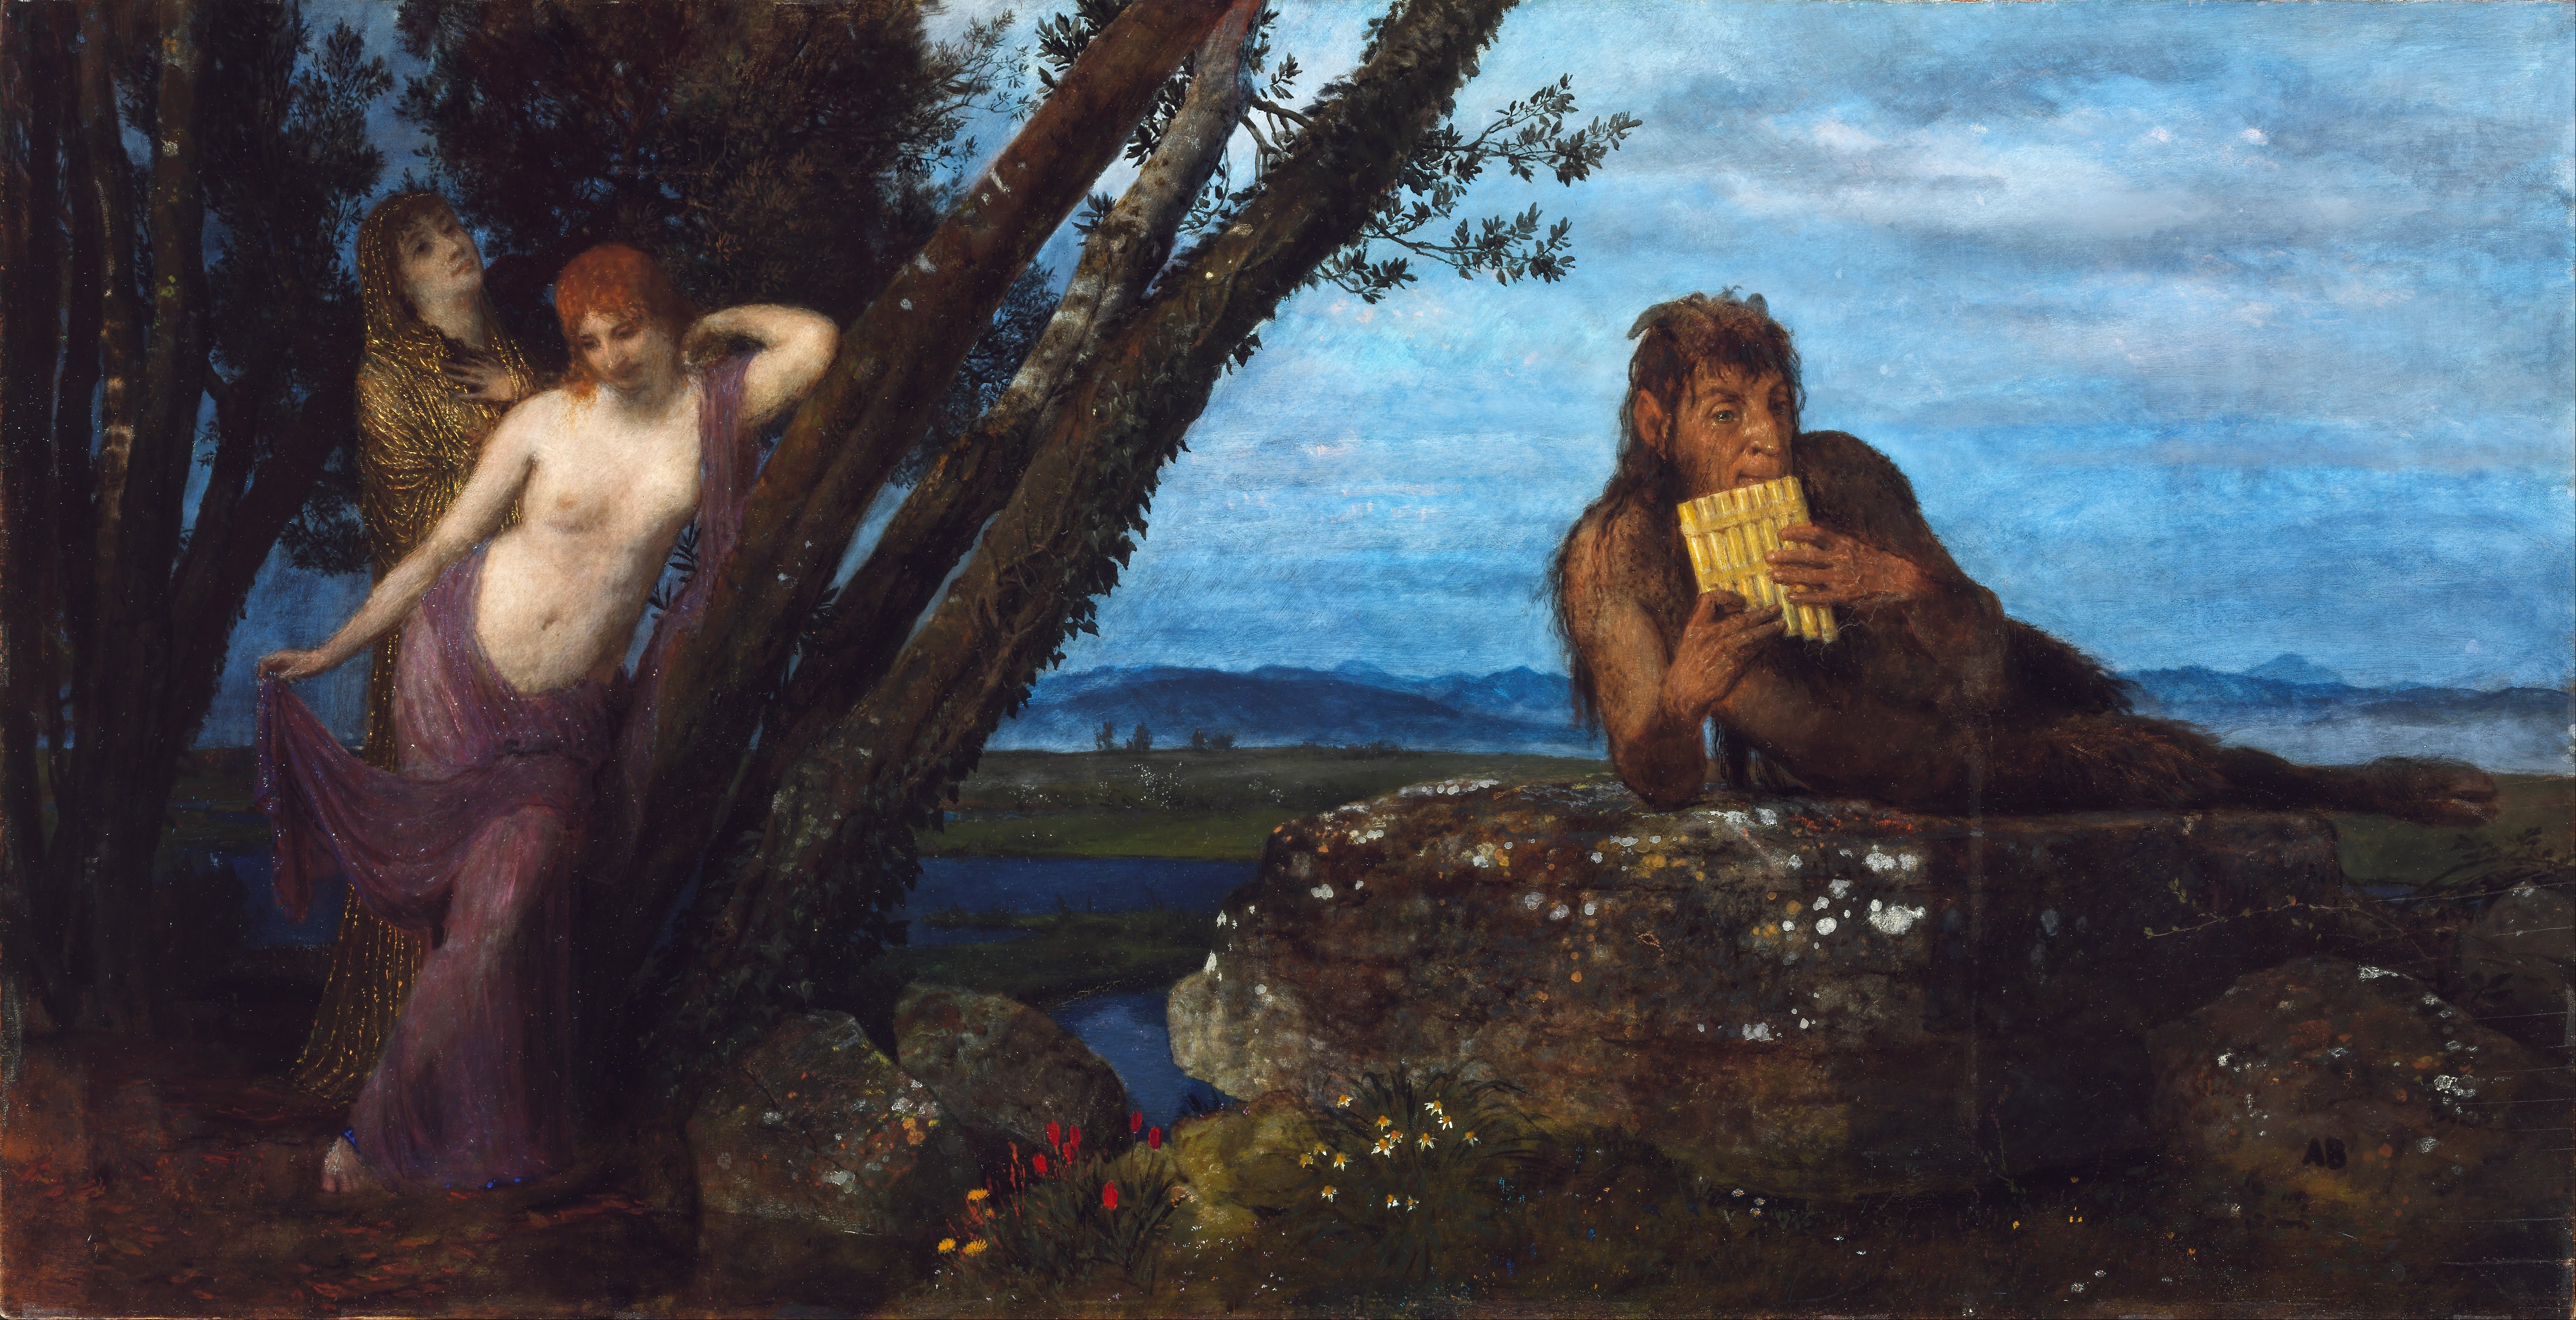 Ανοιξιάτικο δειλινό by Άρνολντ Μπέκλιν - 1879 - 67.4 x 129.5 cm 